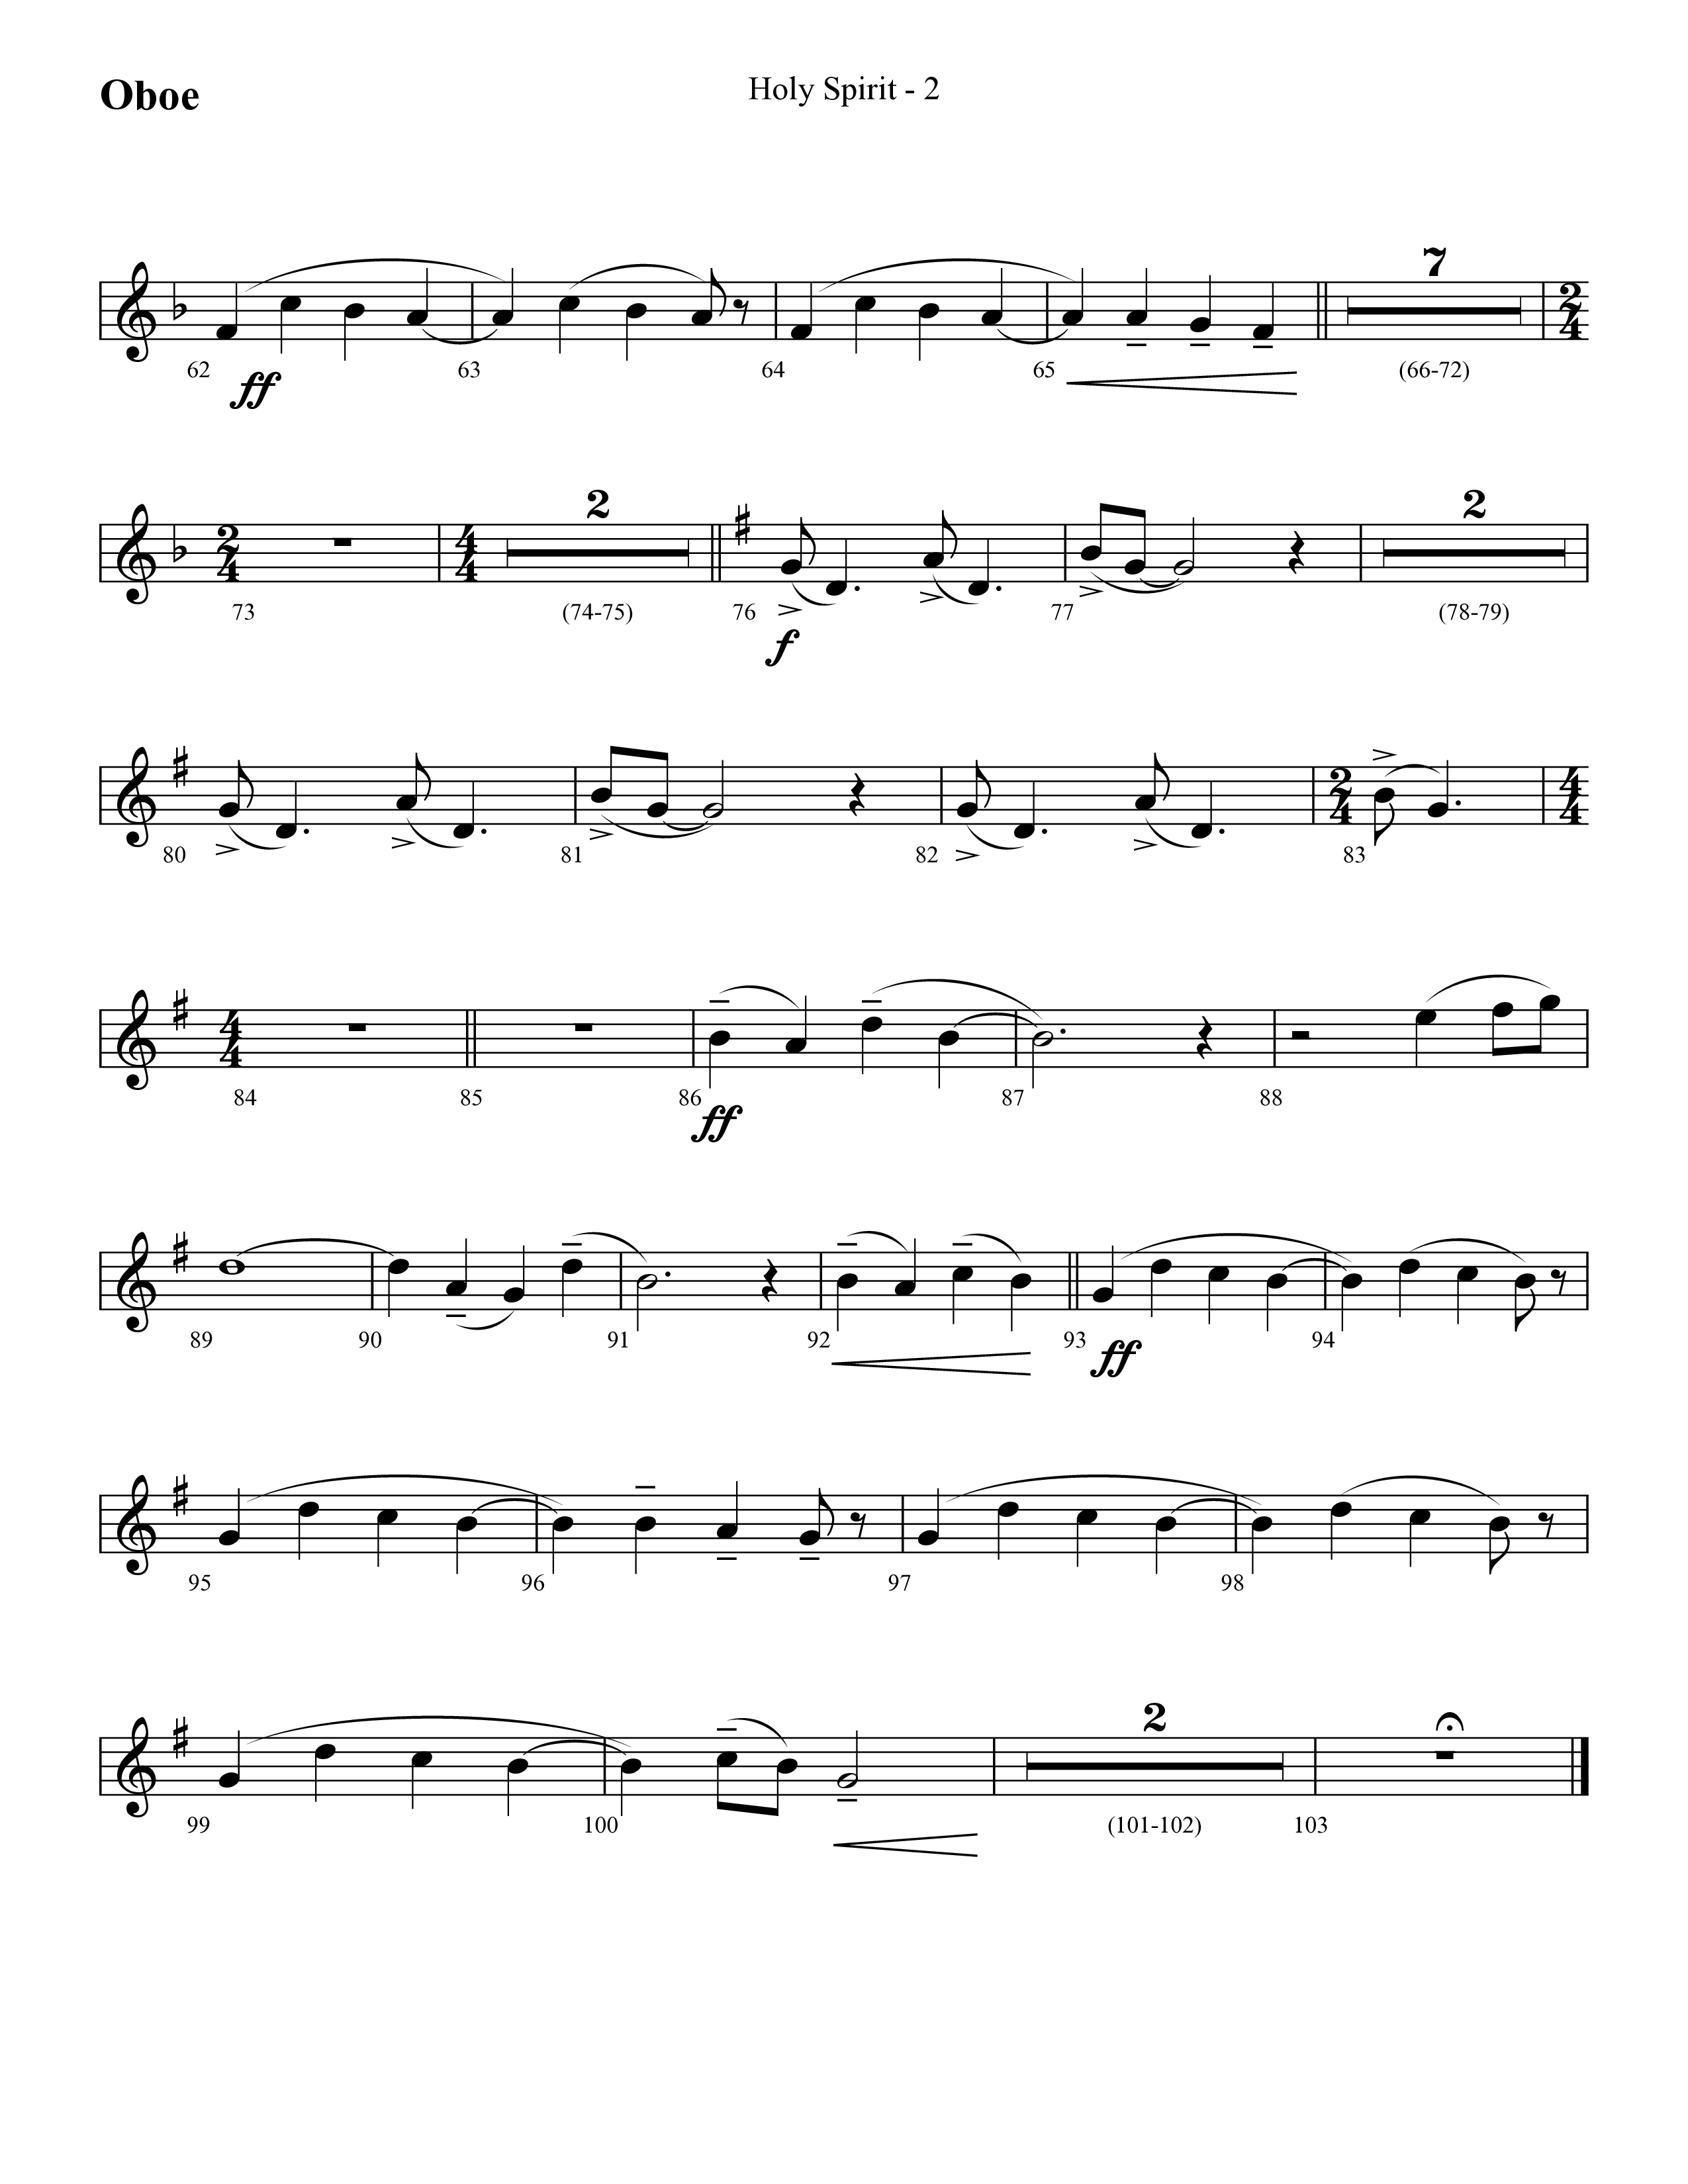 Holy Spirit  (Choral Anthem SATB) Oboe (Lifeway Choral / Arr. Cliff Duren)